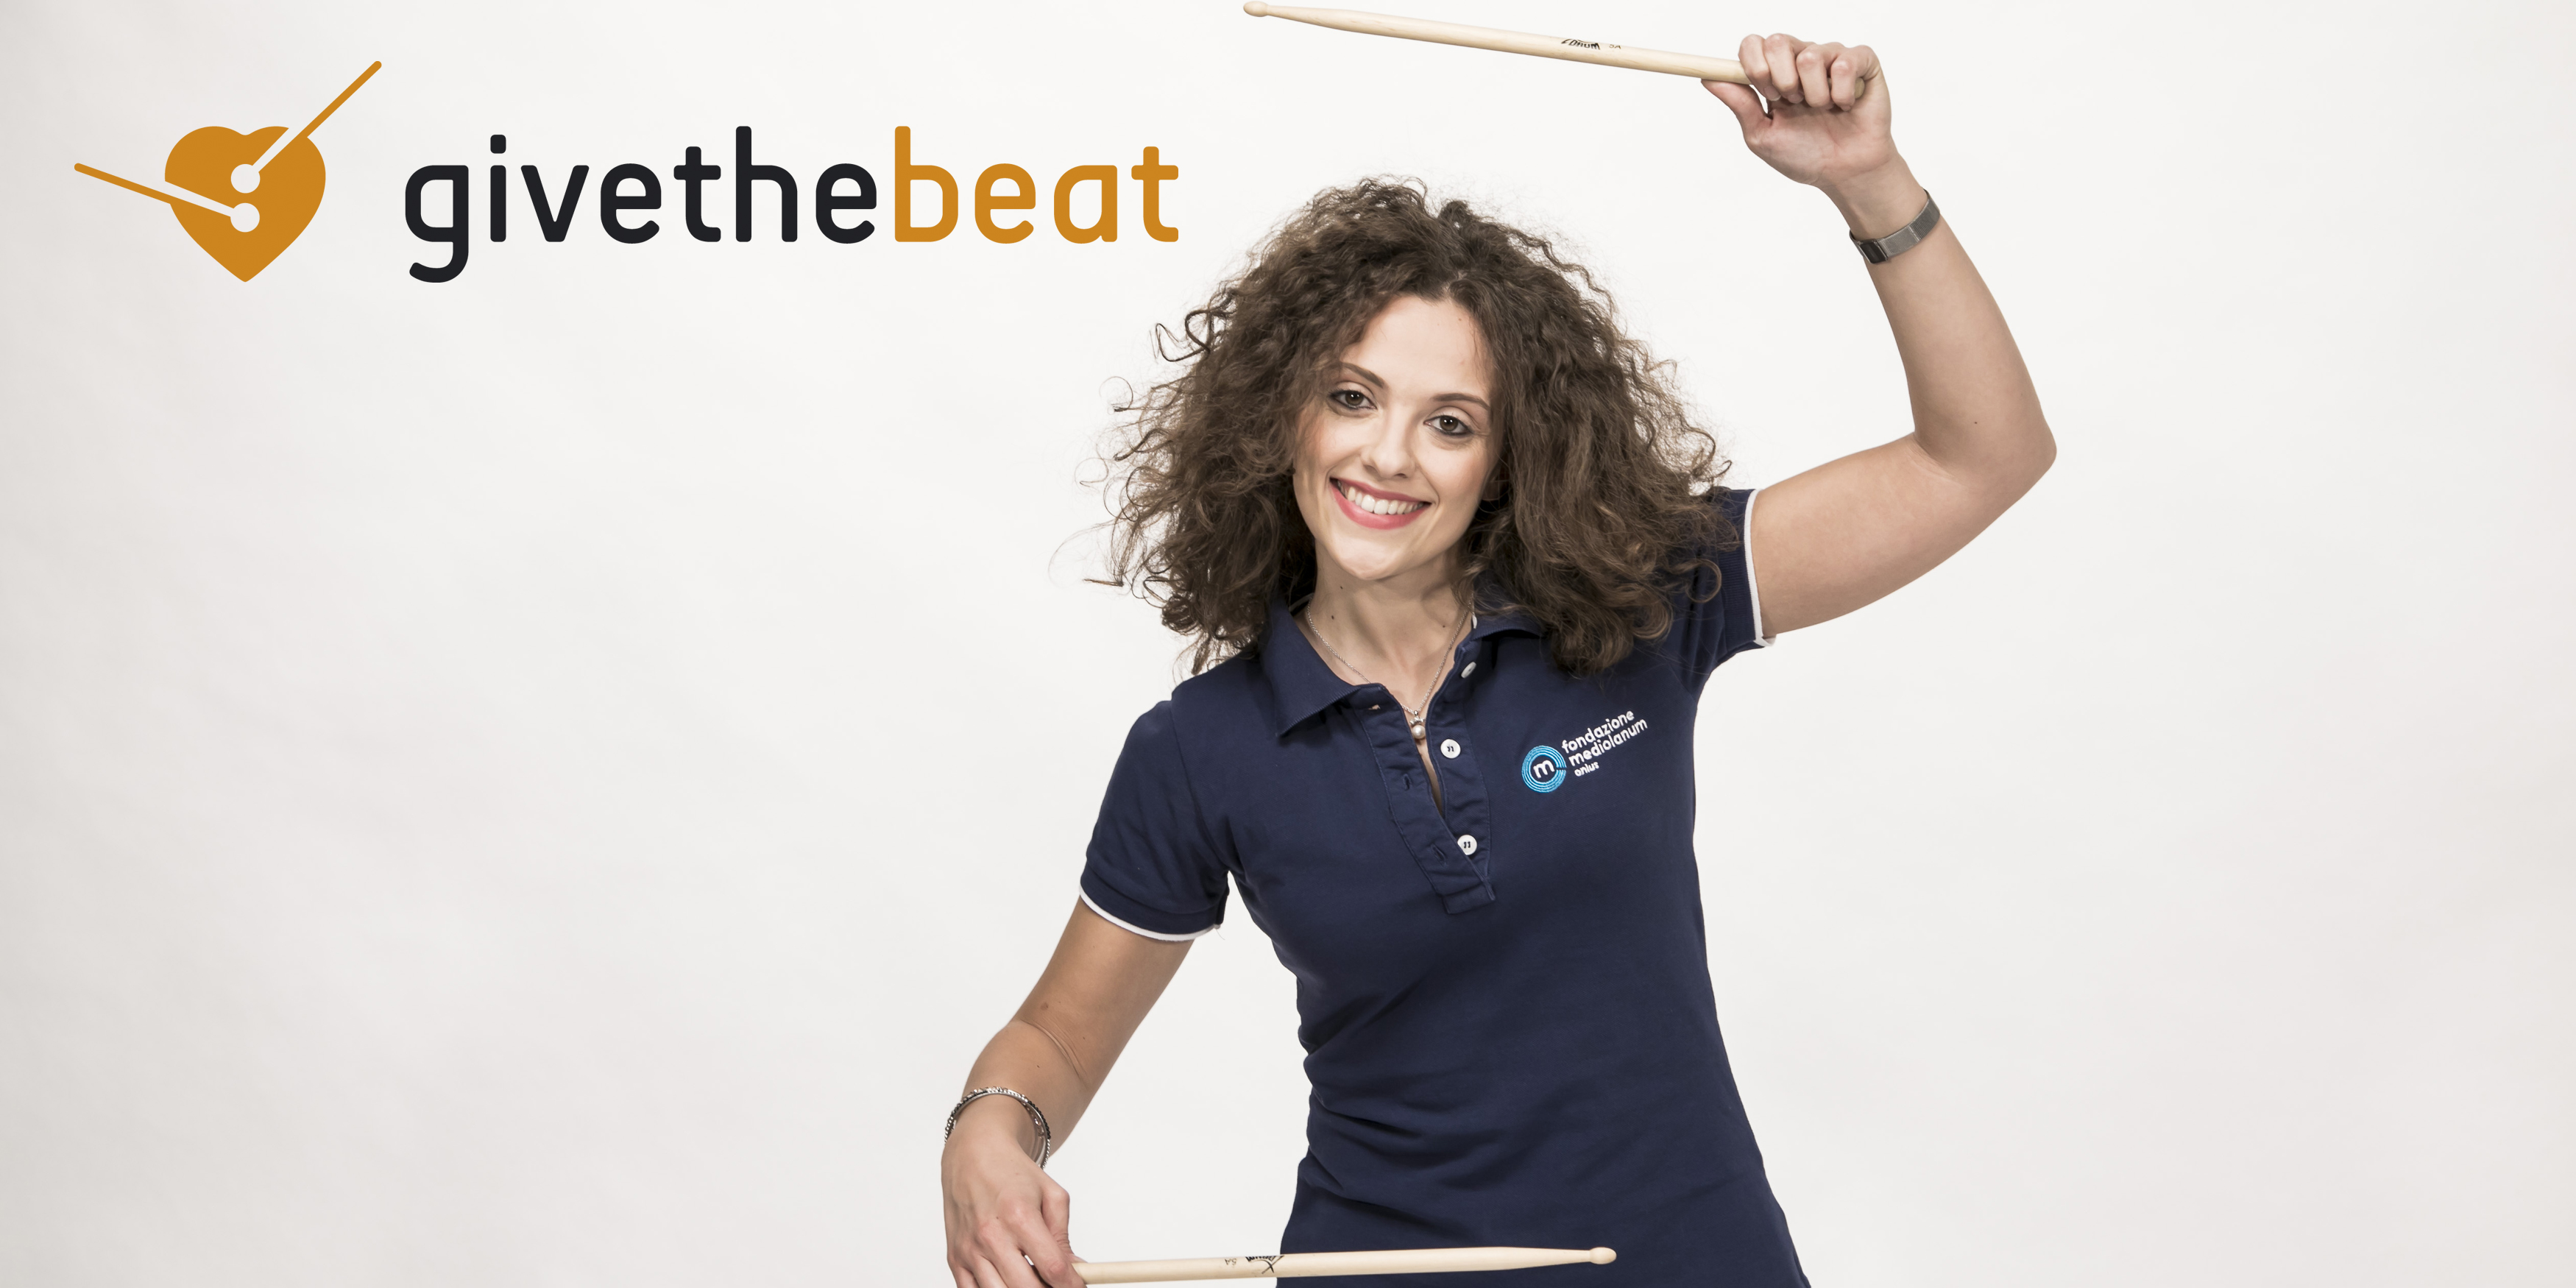 #GivetheBeat Team Eldi-Alessandra Brera